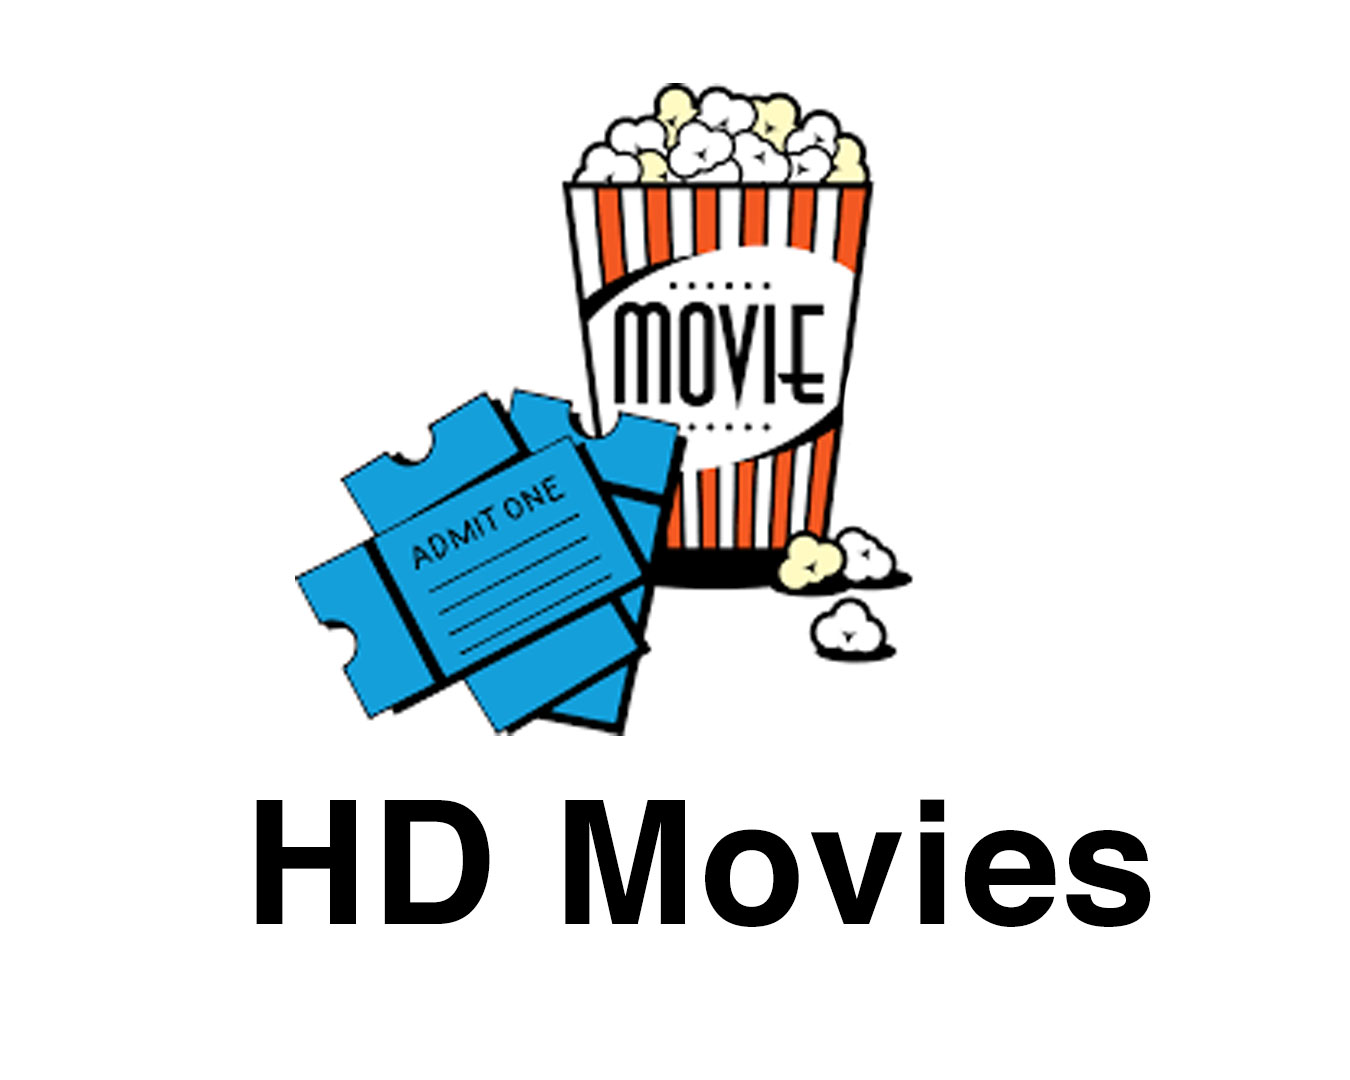 telegram movie channels-HD Movies